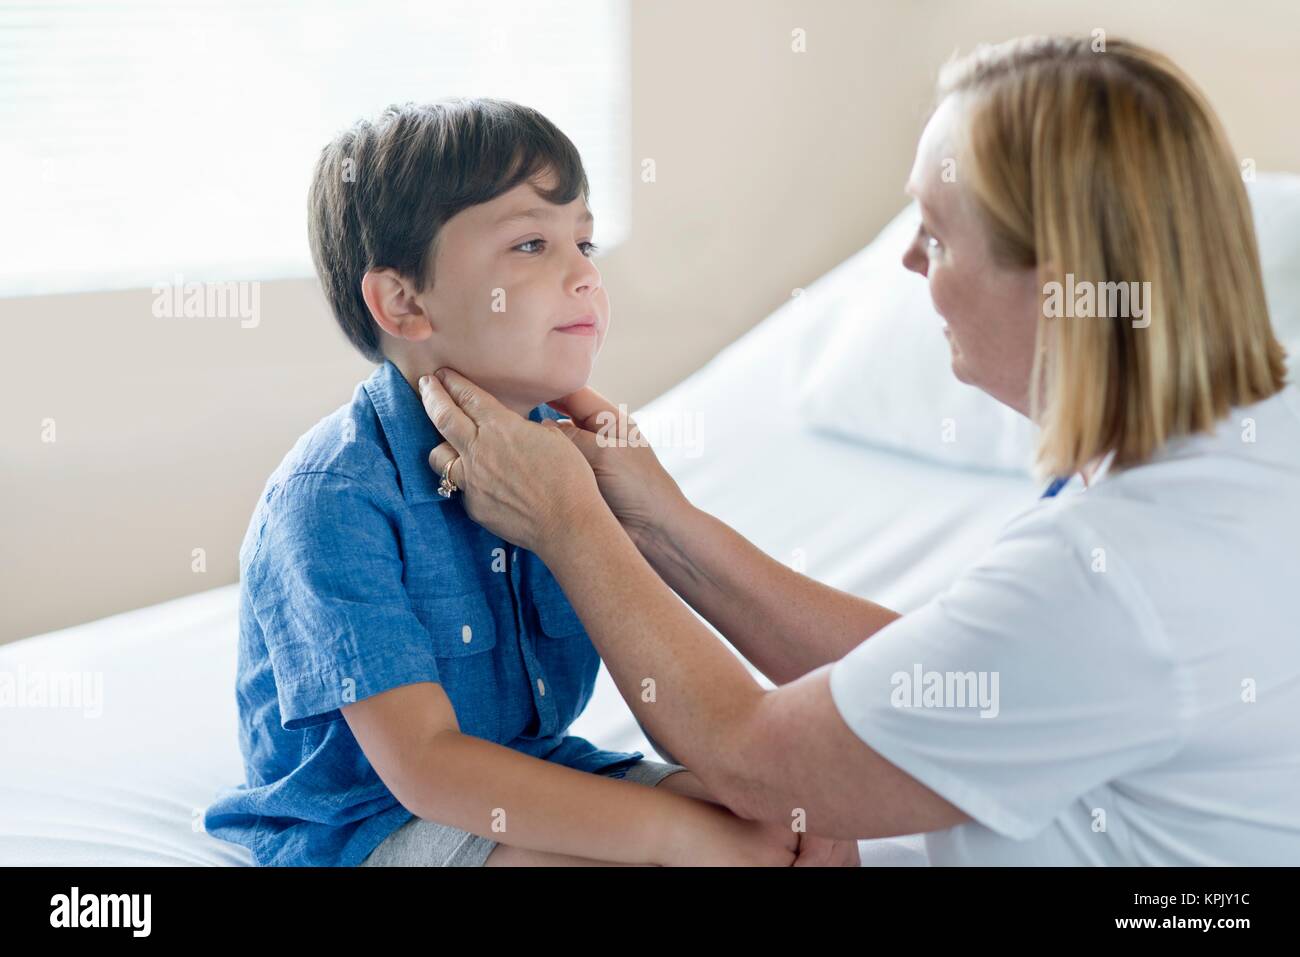 Nurse examining young boy. Stock Photo